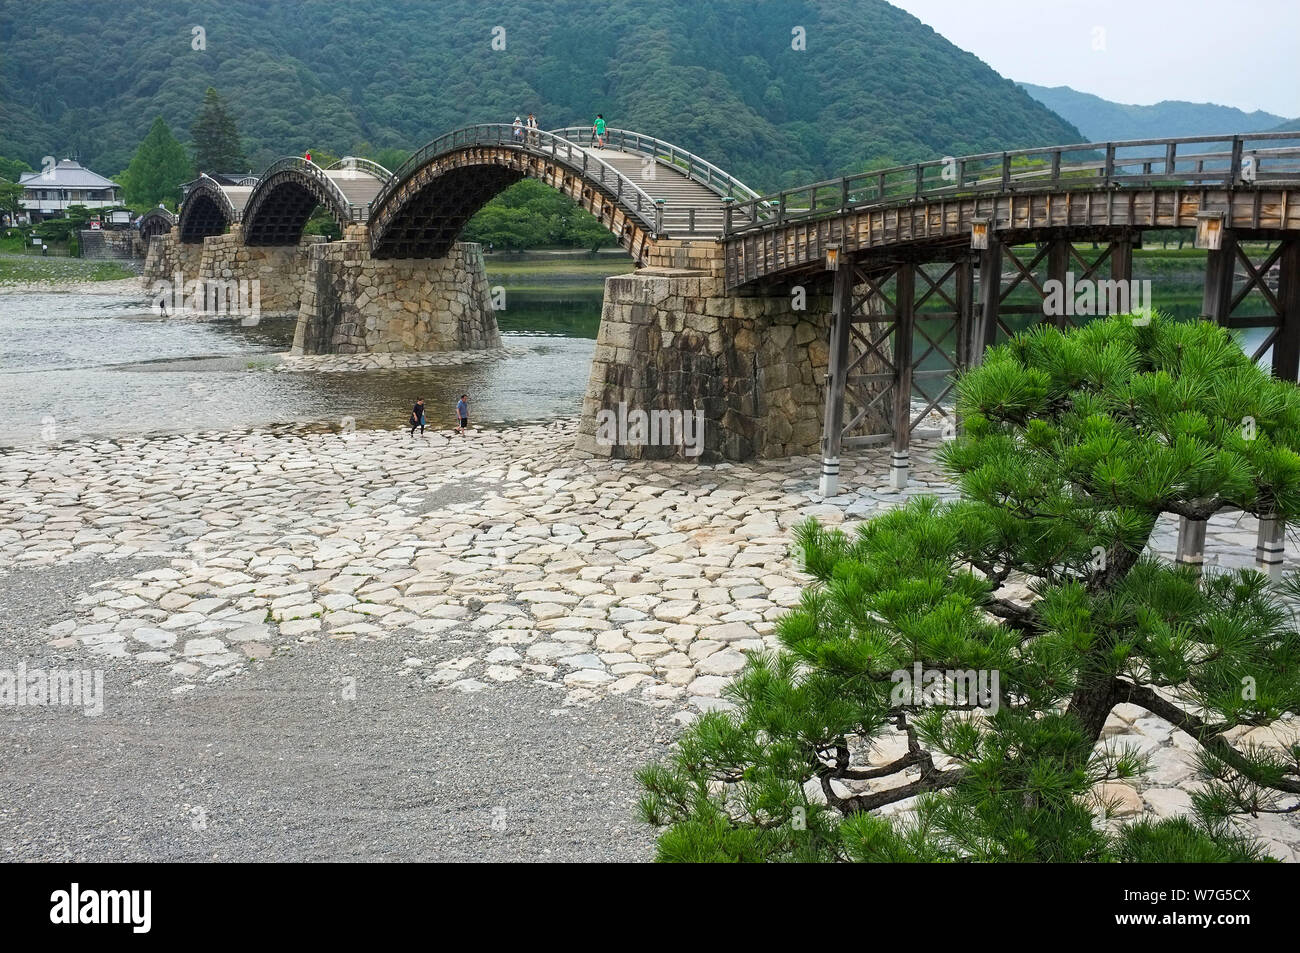 Le Kintai Bridge construit en 1673 sur la Rivière Nishiki, dans la ville d'Iwakuni, dans la préfecture de Yamaguchi, Japon. Banque D'Images